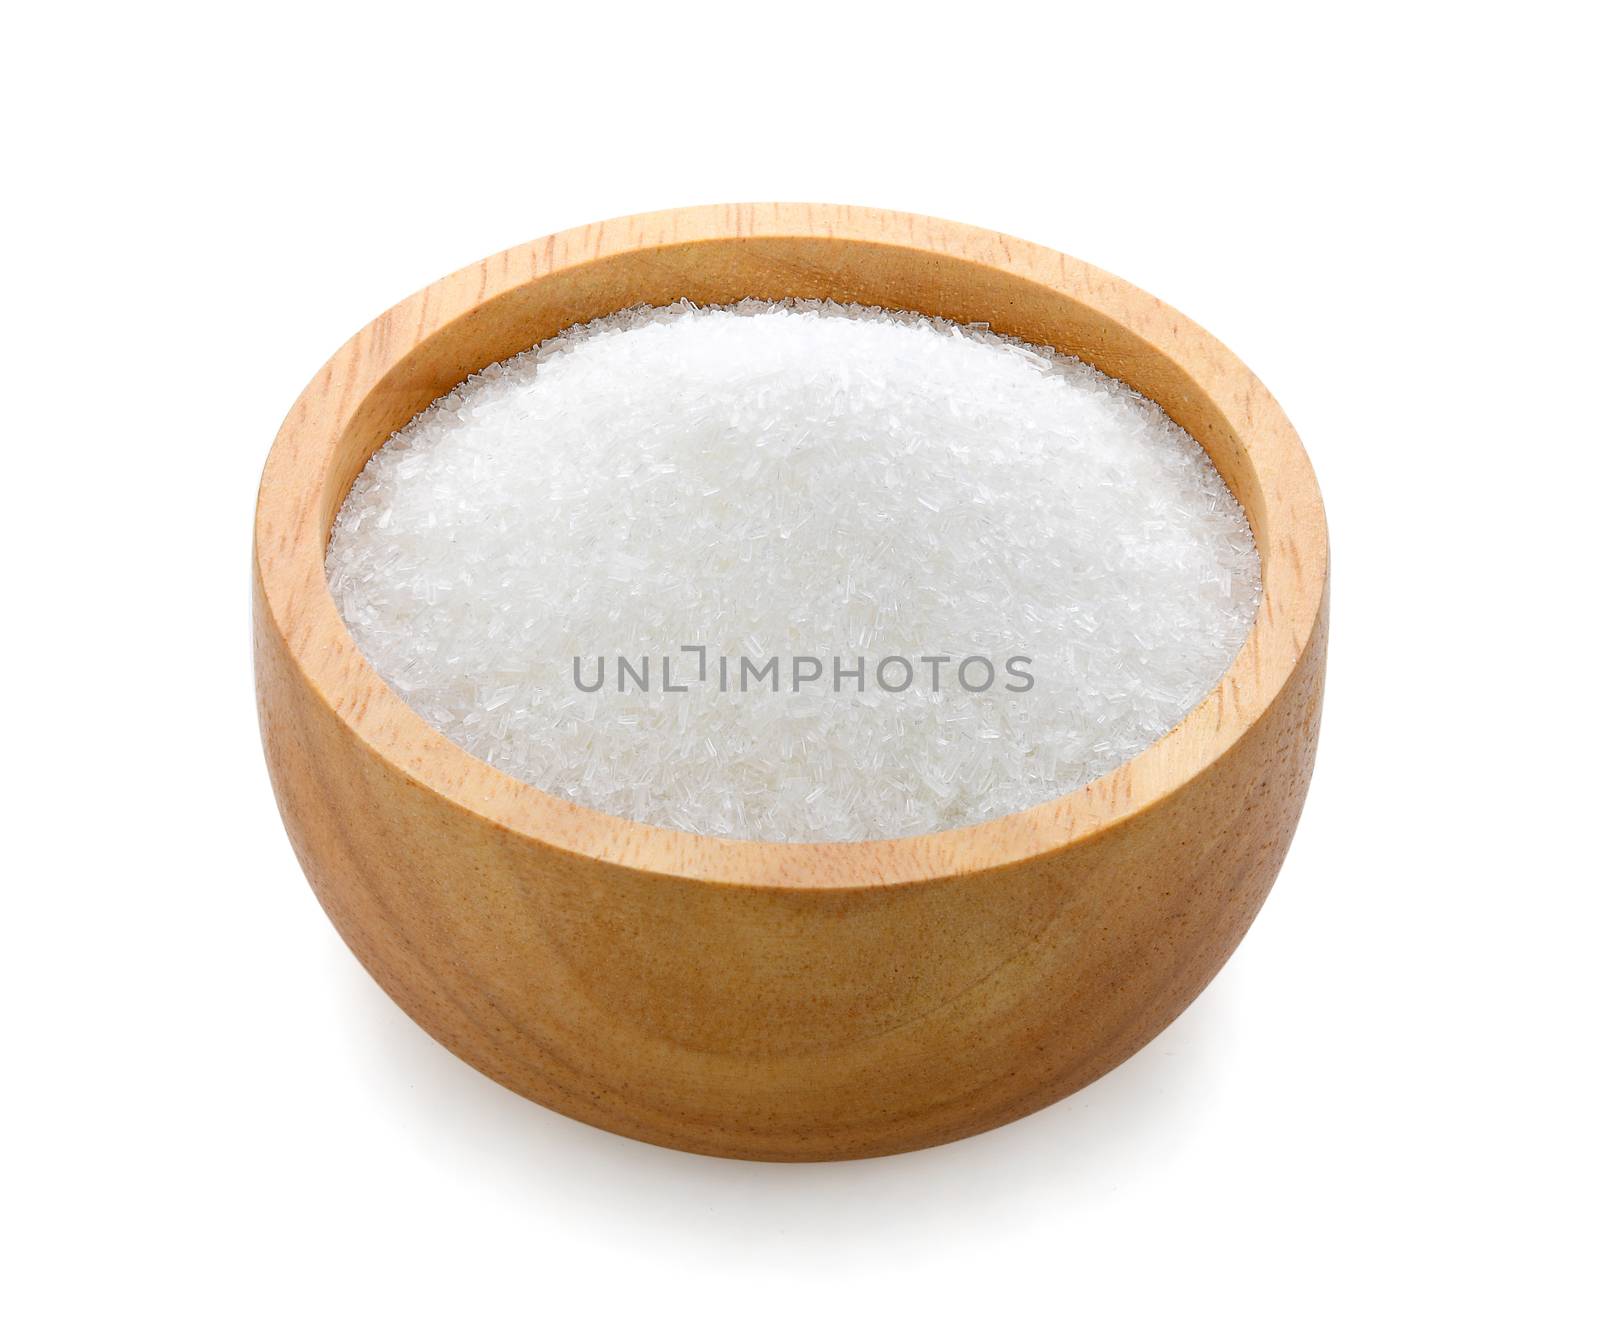 monosodium glutamate in wood bowl on white background